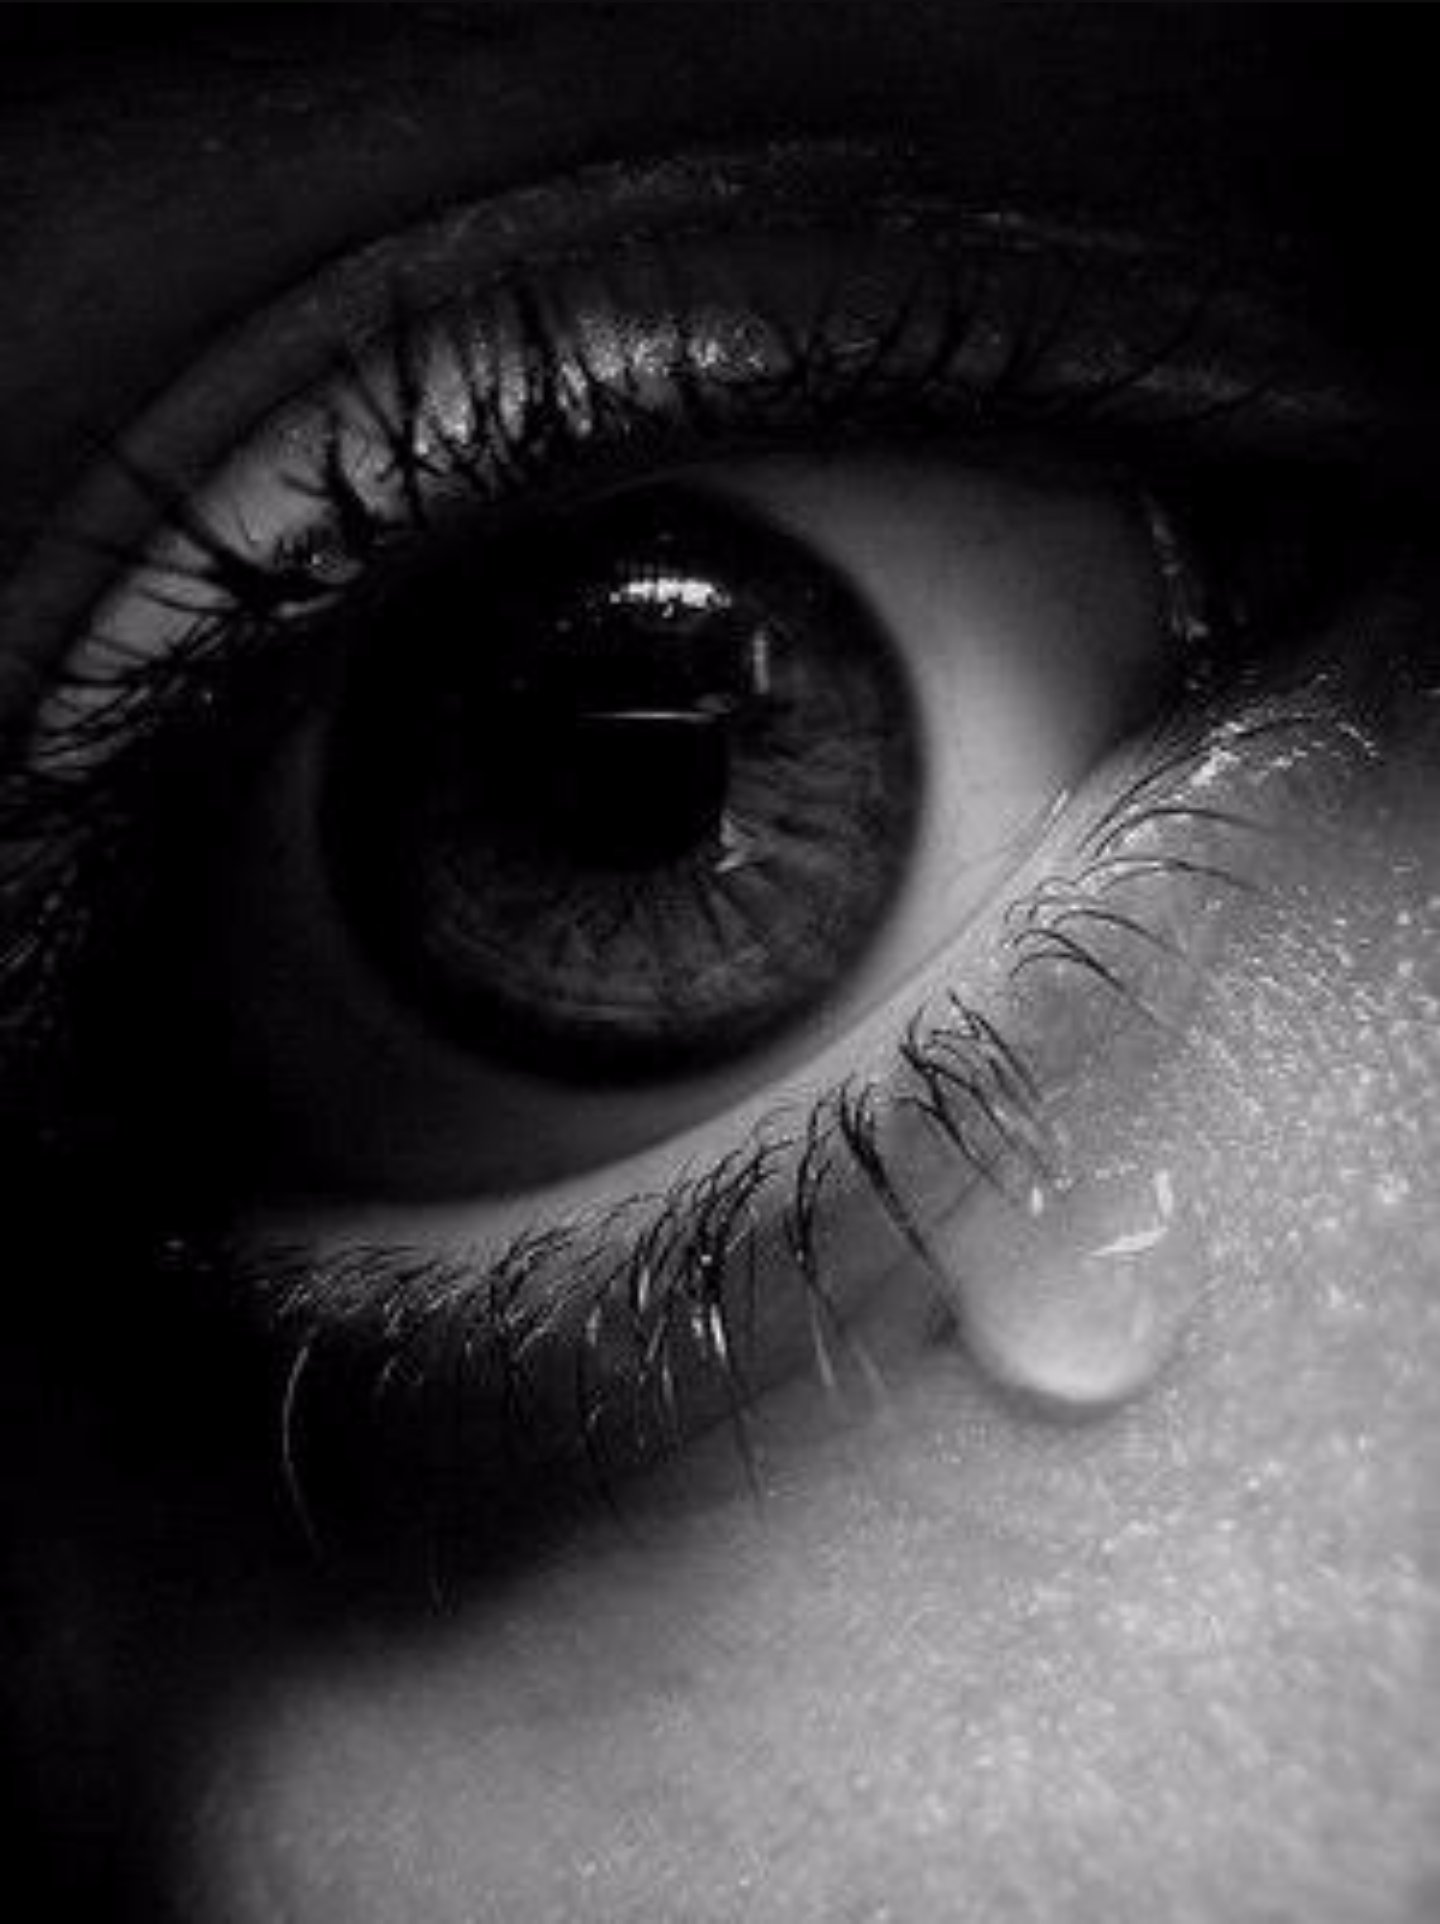 Hình ảnh đầy buồn bã với những giọt nước mắt ẩn chứa những điều không nói ra. Nhưng hãy xem hình để cảm nhận sự đau đớn từ làn da.